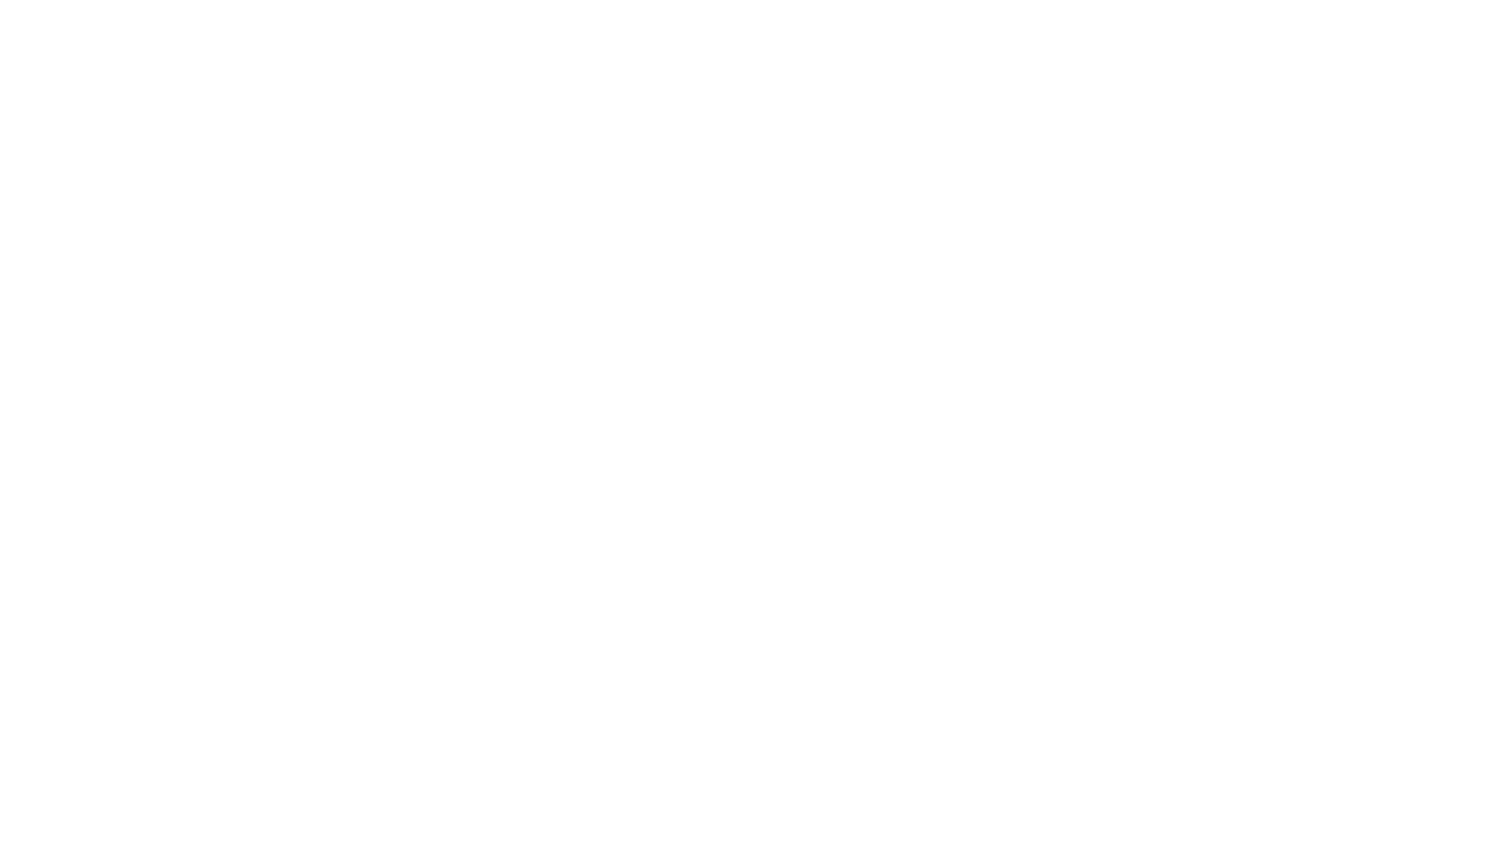 CROSSWIND FARM